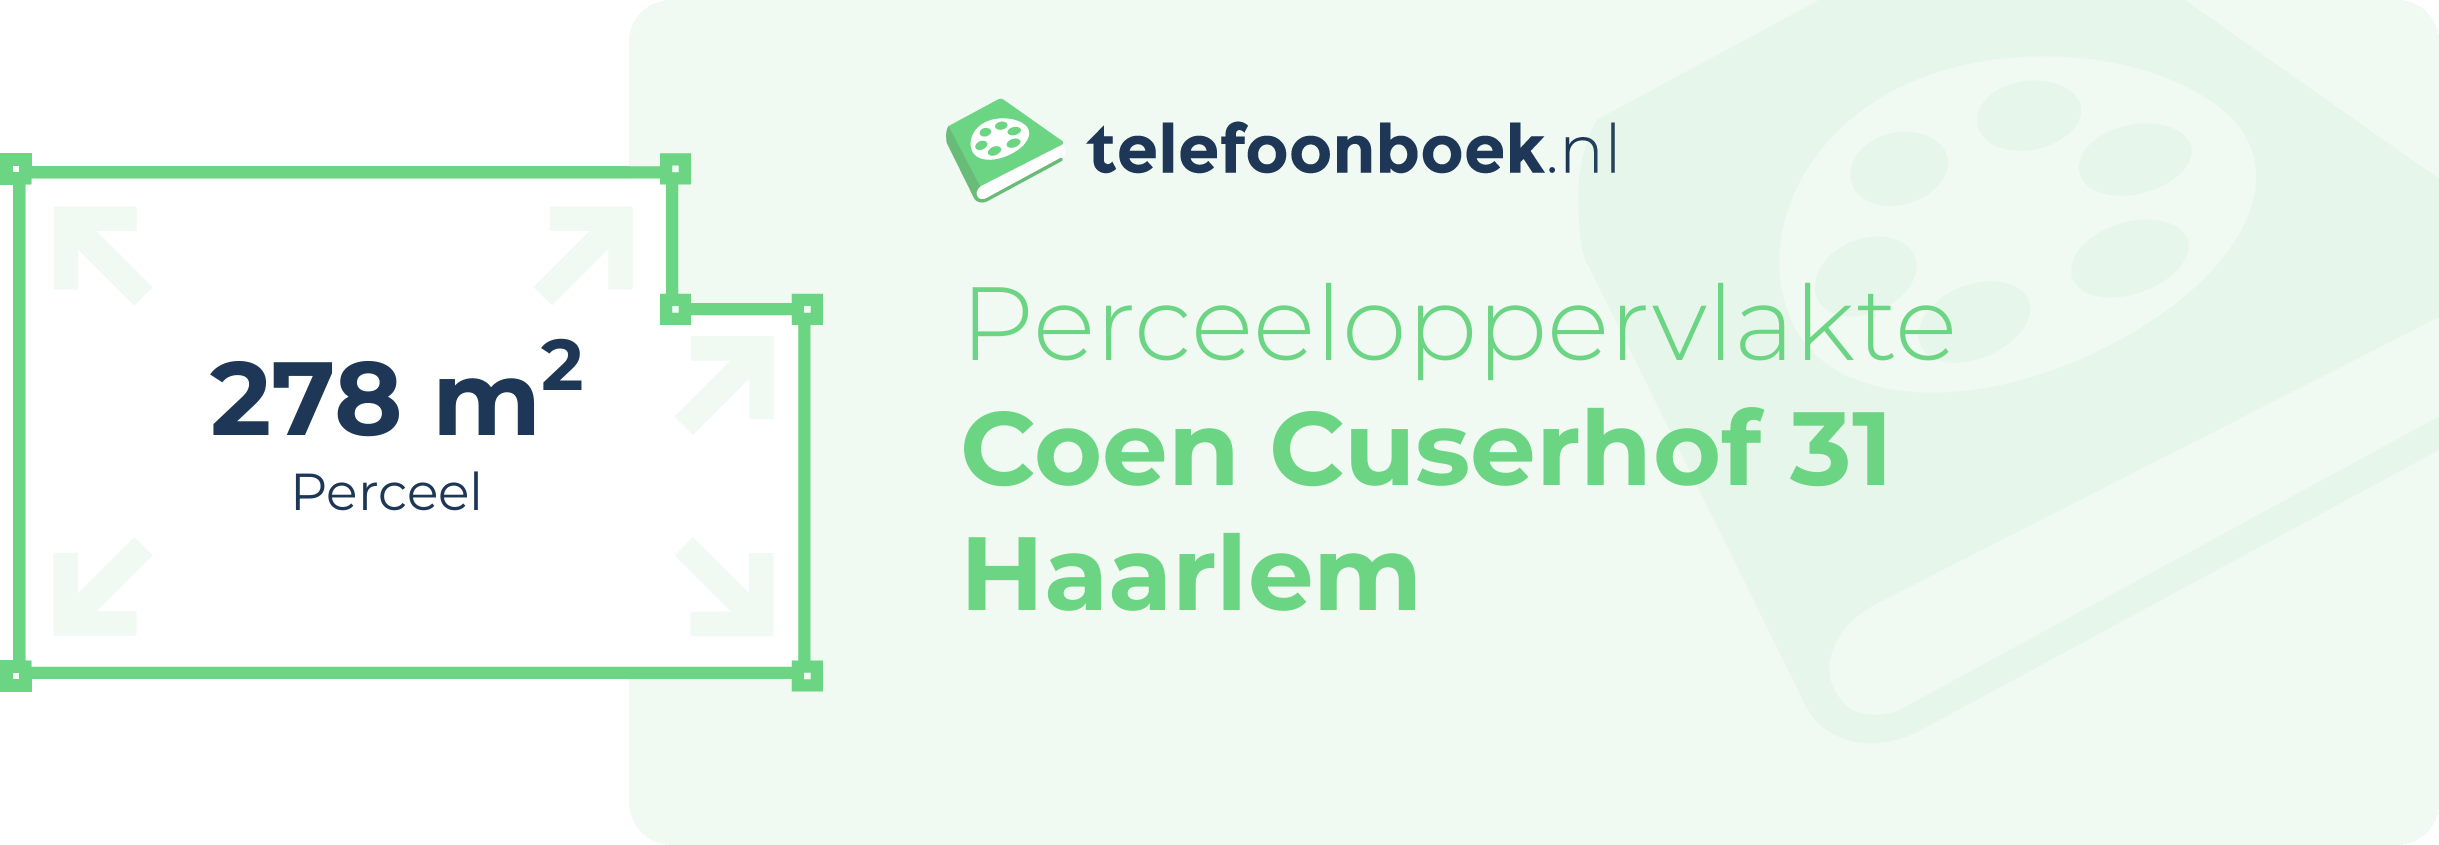 Perceeloppervlakte Coen Cuserhof 31 Haarlem